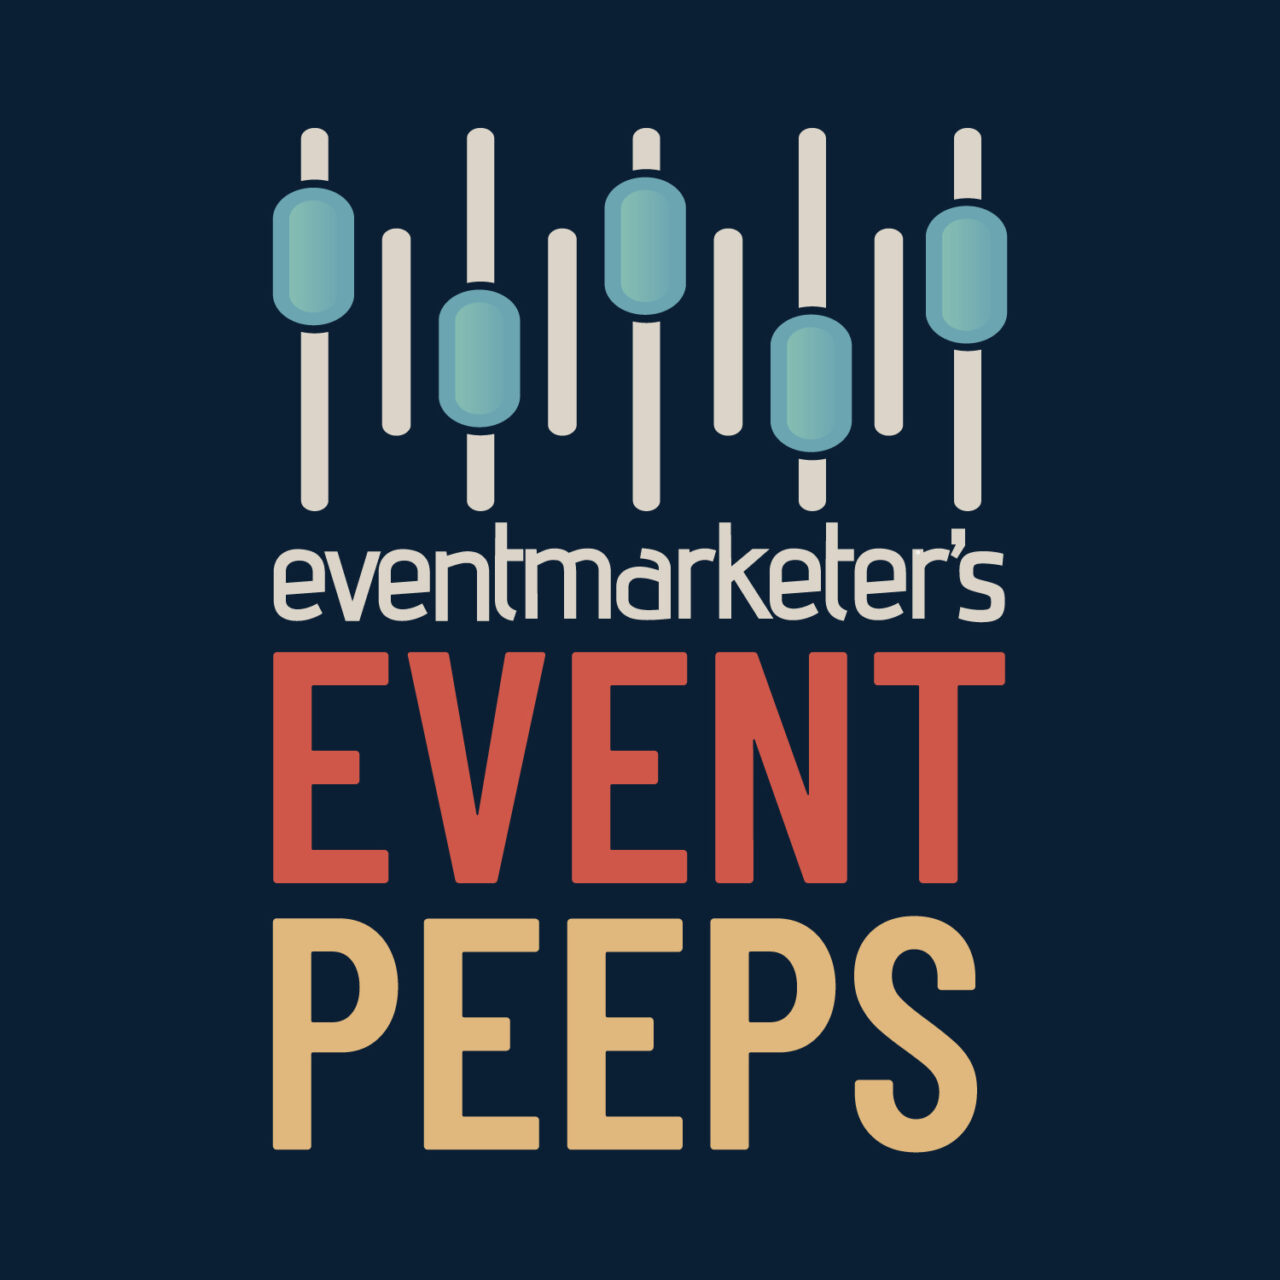 event peeps Podcast_square -Logo__2 copy